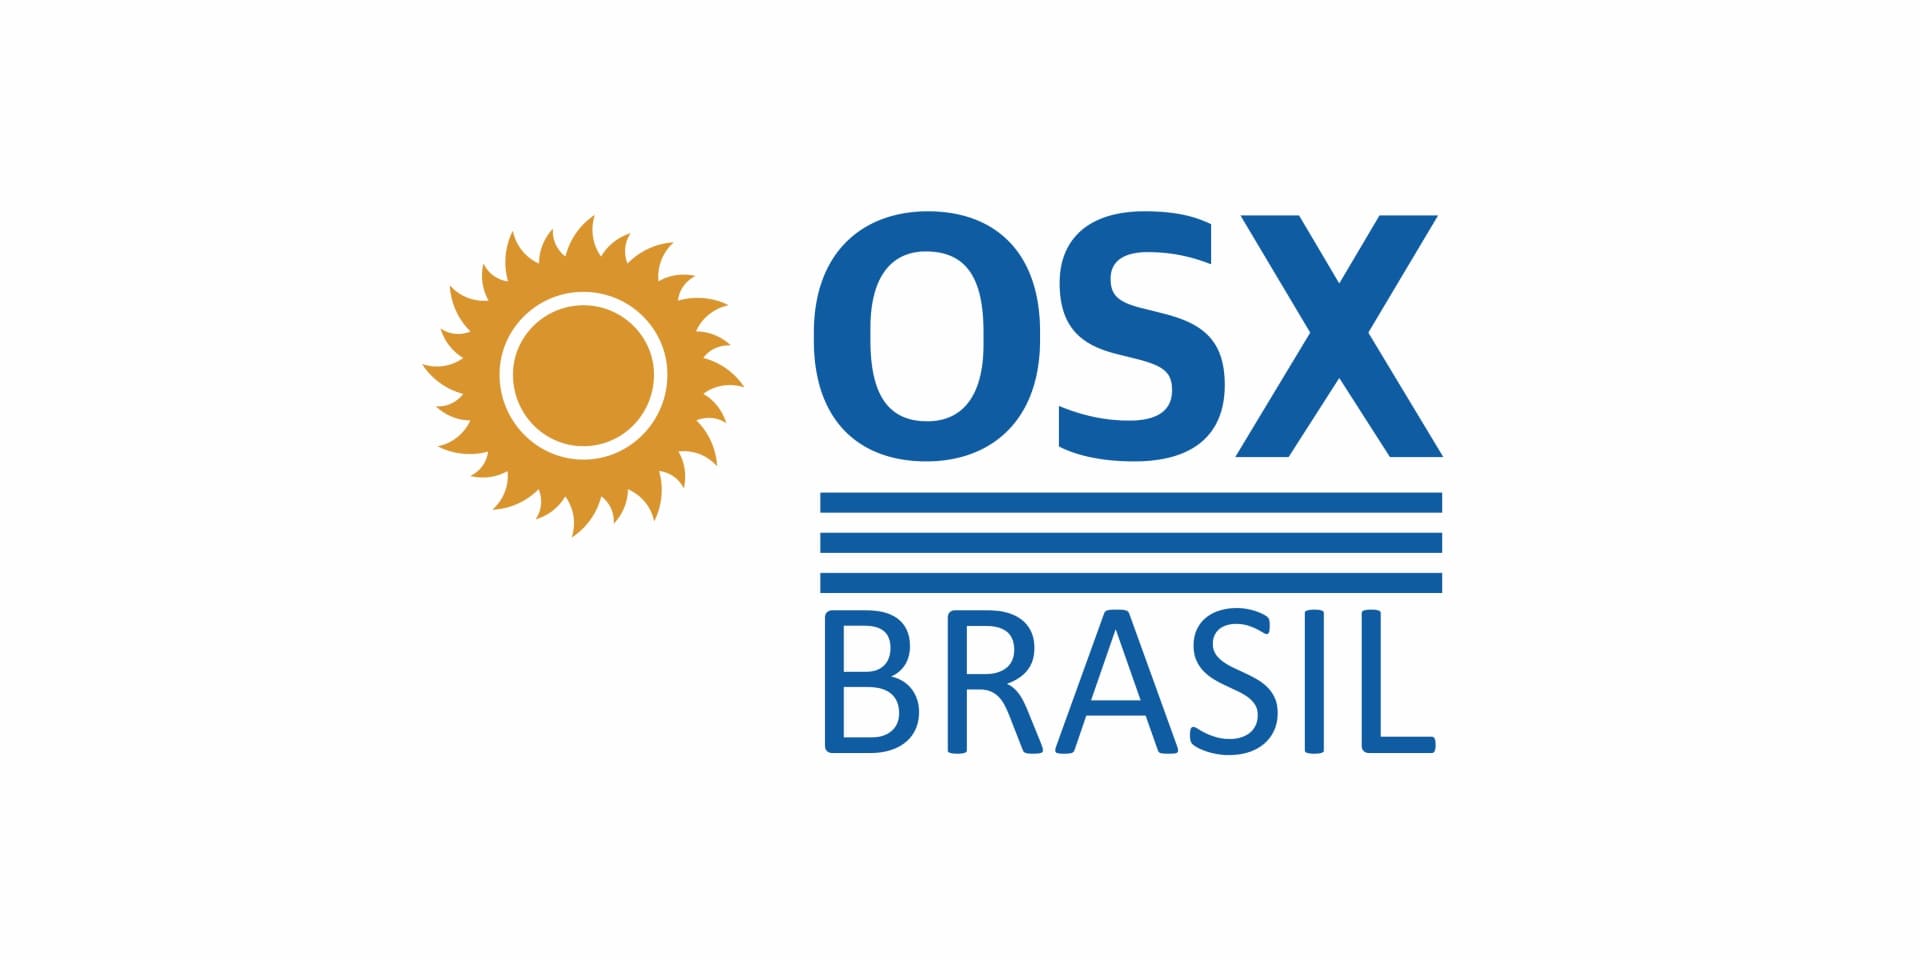 OSX BRASIL